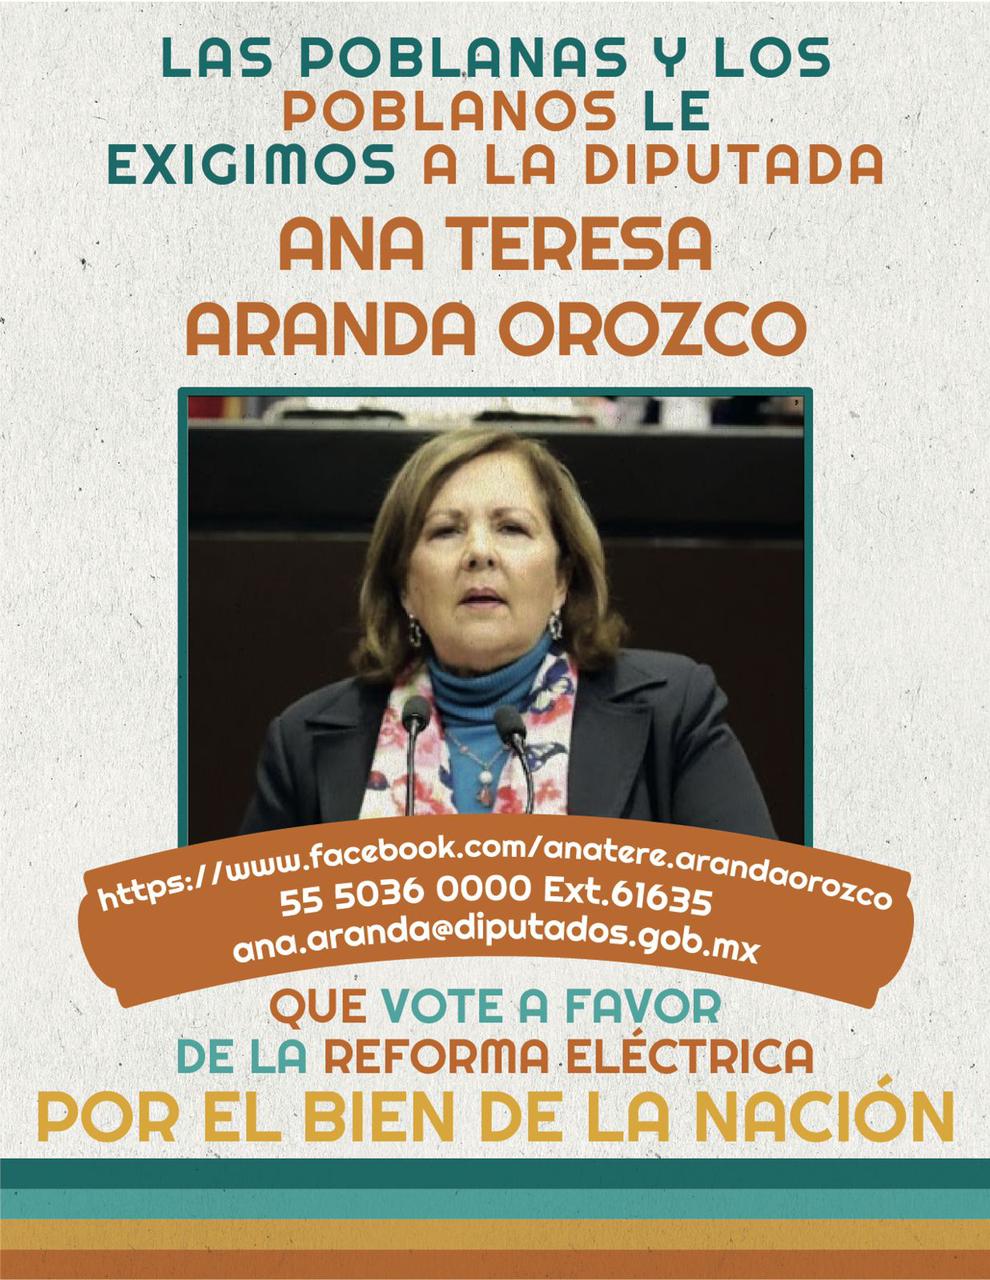 Diputados federales del Pan de Puebla reciben mensaje para votar por Reforma Eléctrica de AMLO